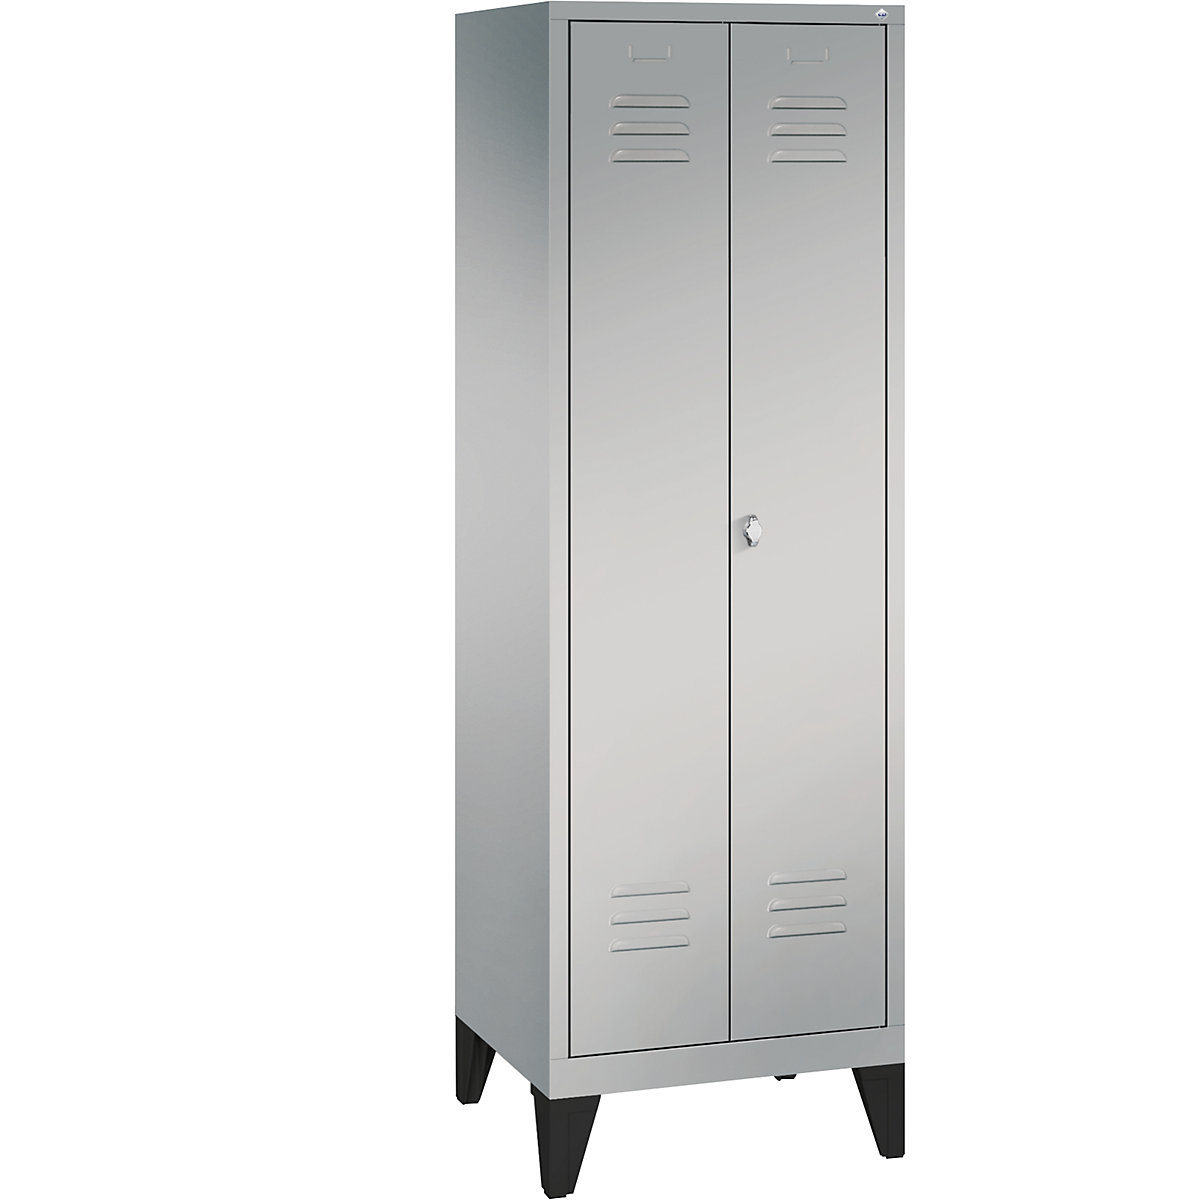 Garderobna omara CLASSIC z nogami in dvokrilnimi vrati na stik – C+P, 2 predelka, širina 300 mm/predelek, aluminijasto bele barve-8